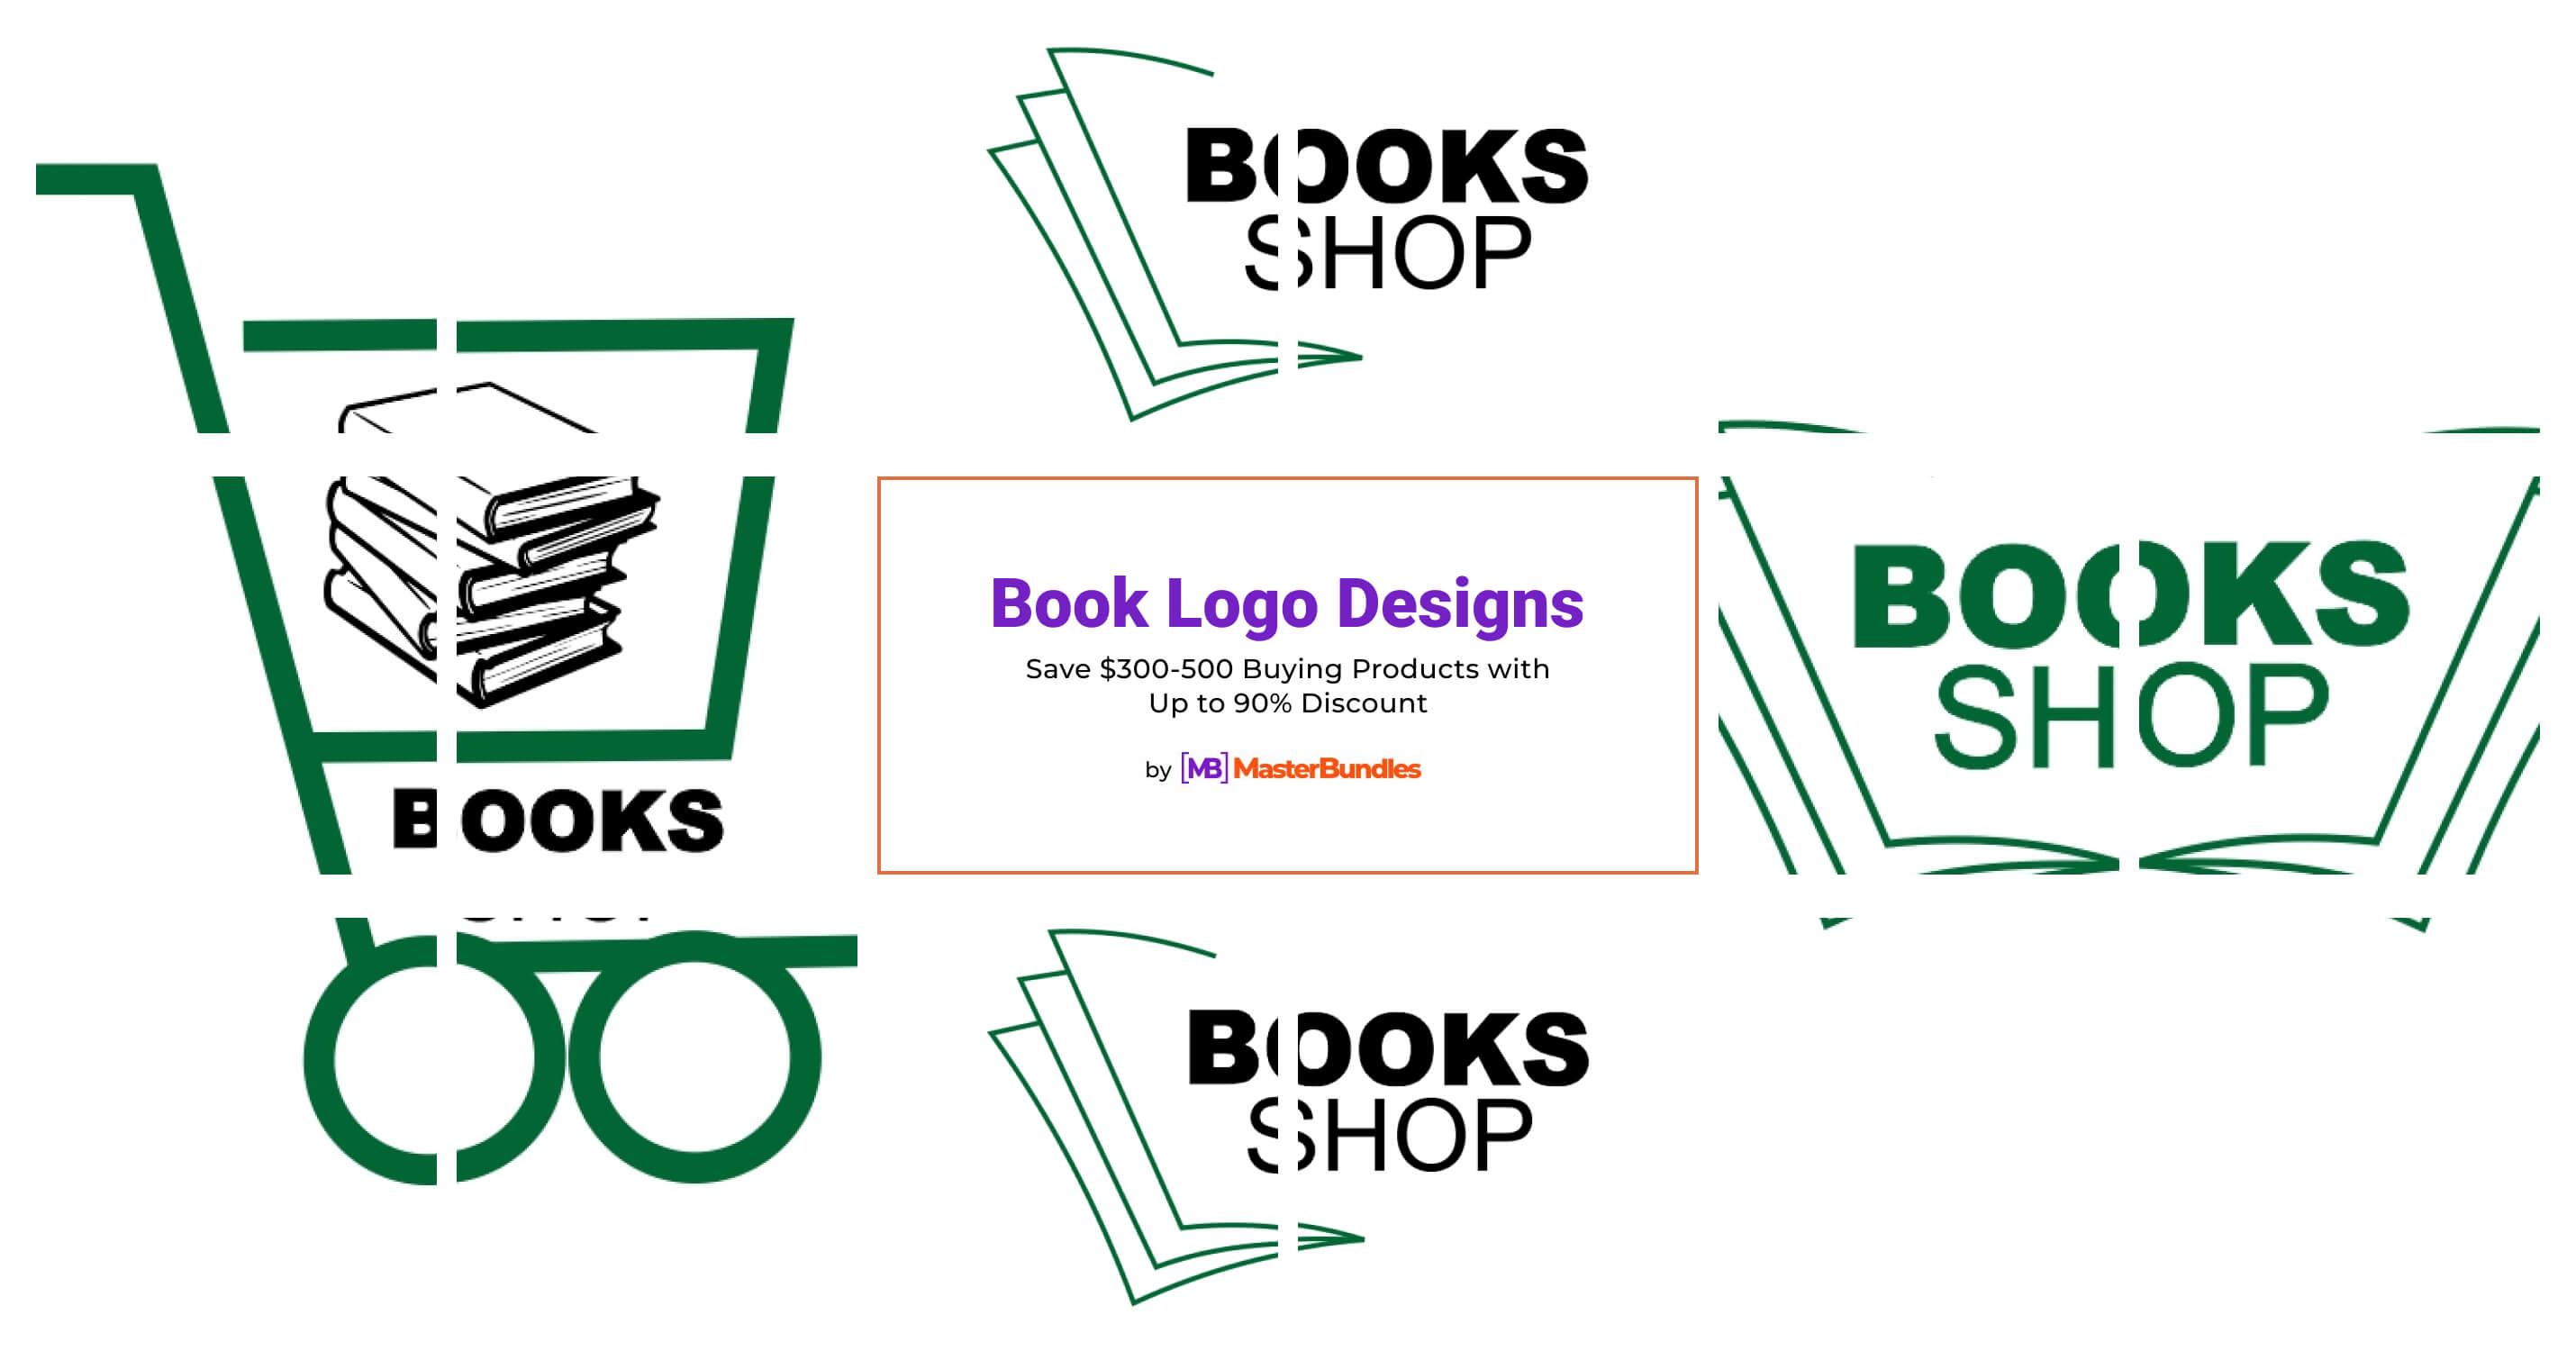 Book shop logo | Shop logo, Bookshop, Shop logo design